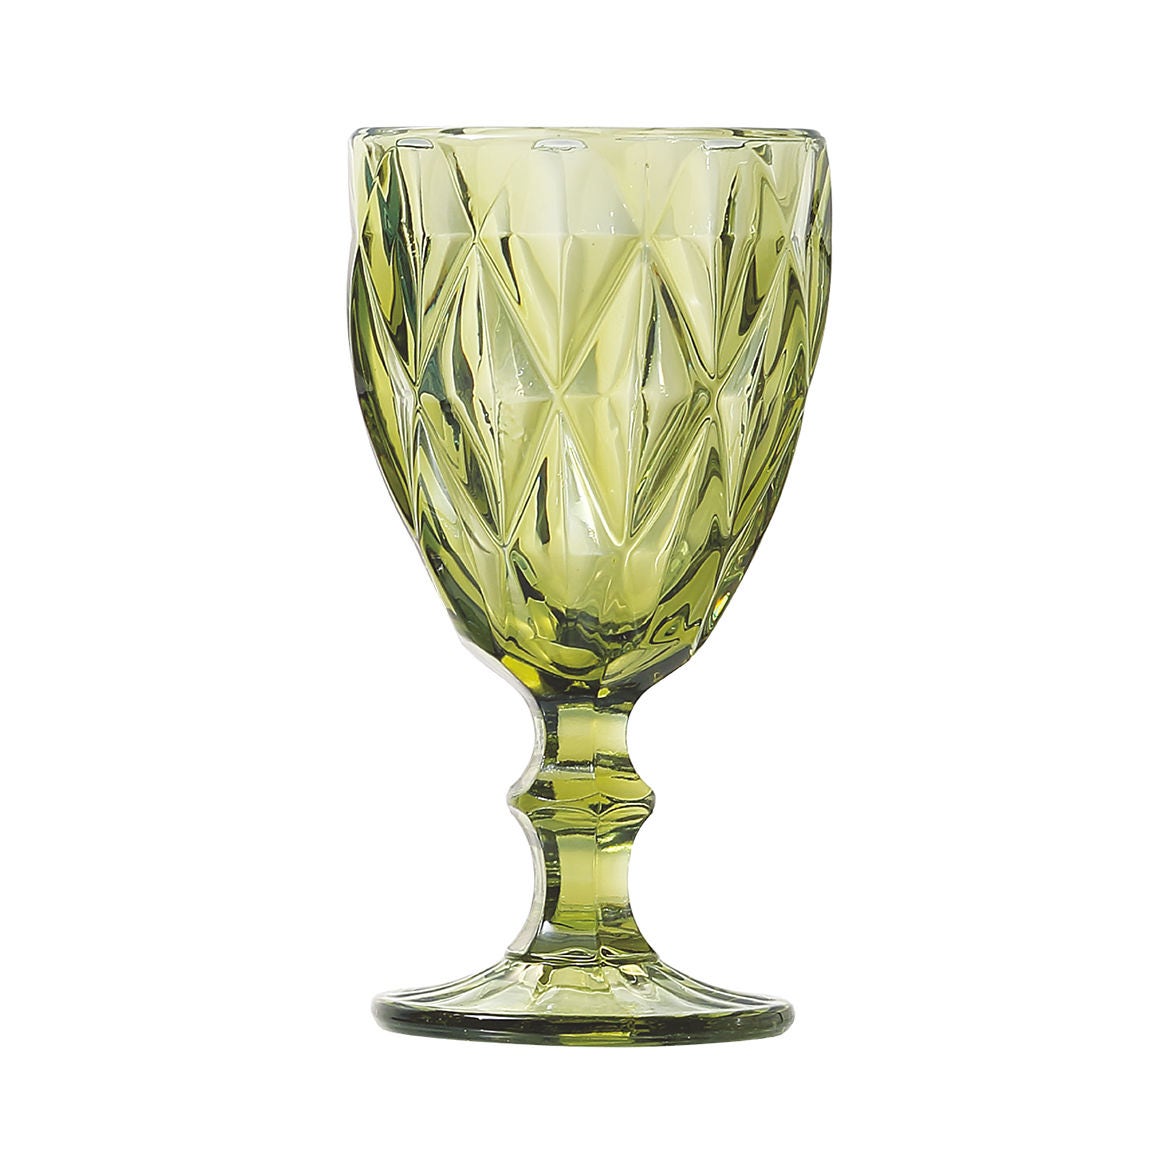 Pahar pentru vin VA2021, din sticla, verde, 250 ml, set 6 bucati